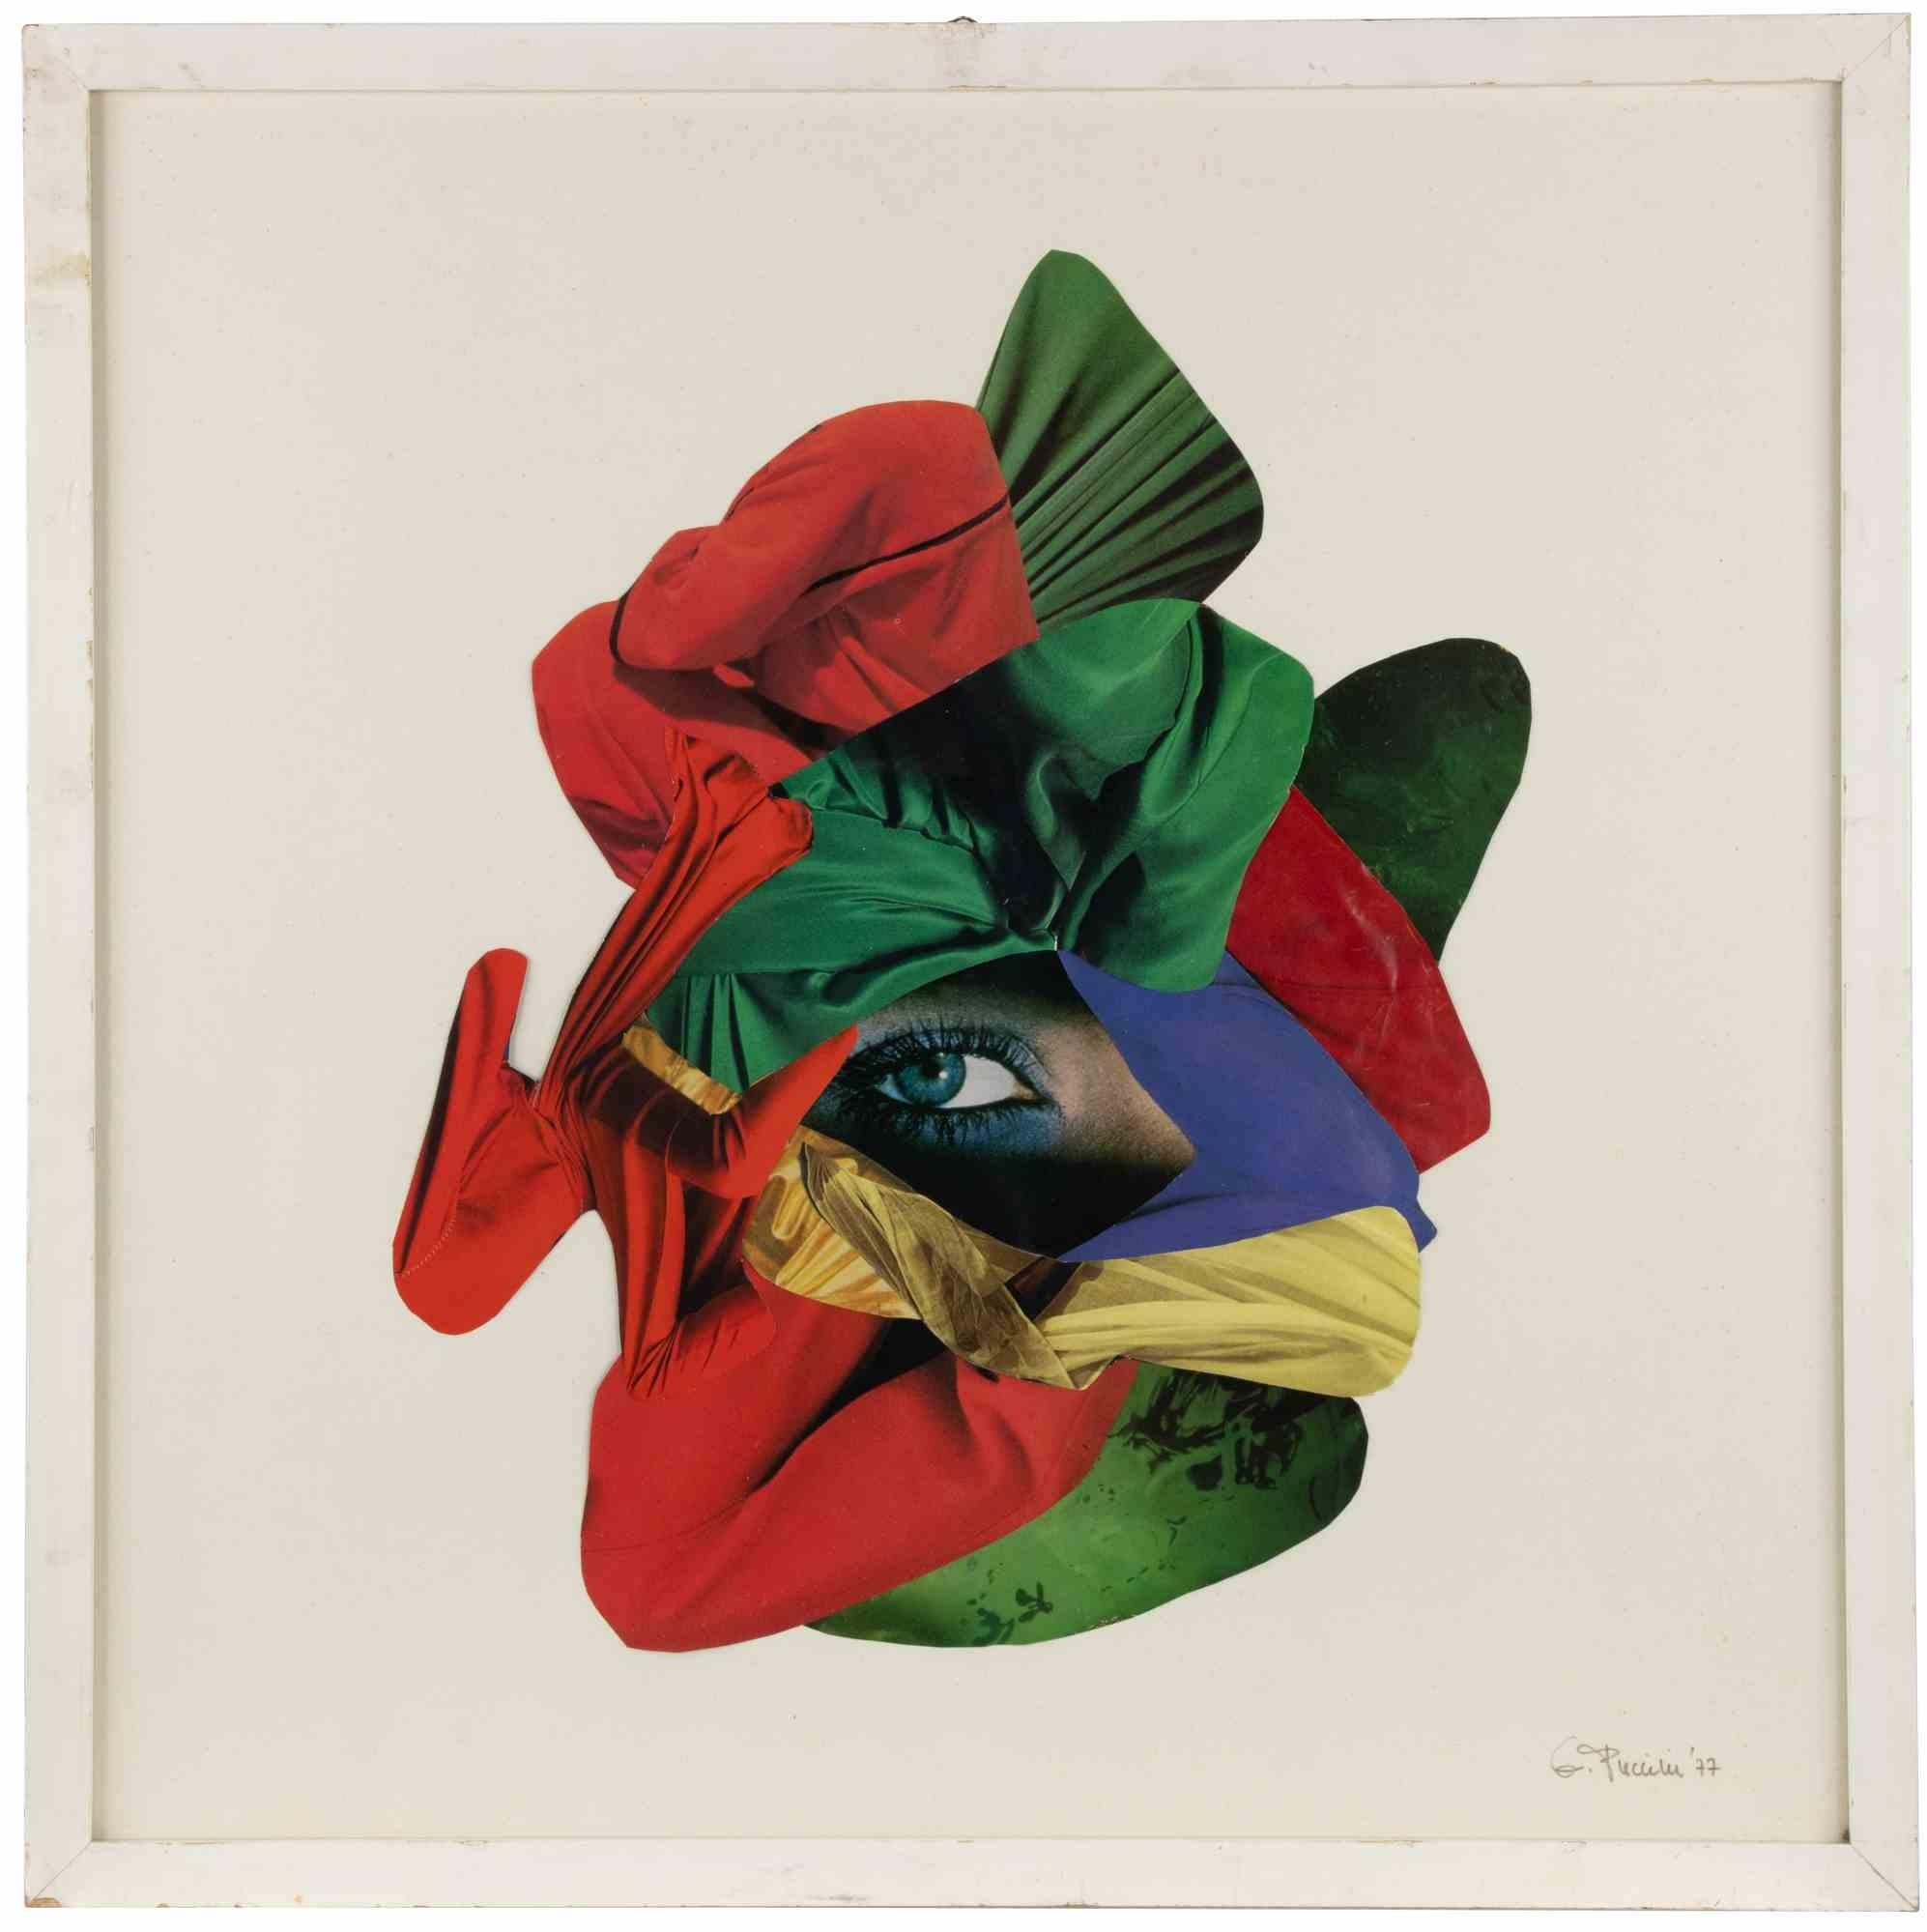 Das Auge ist ein zeitgenössisches Kunstwerk von Genny Puccini aus dem Jahr 1977.

Gemischte Farbcollage auf Papier.

Handsigniert und datiert am unteren rechten Rand.




